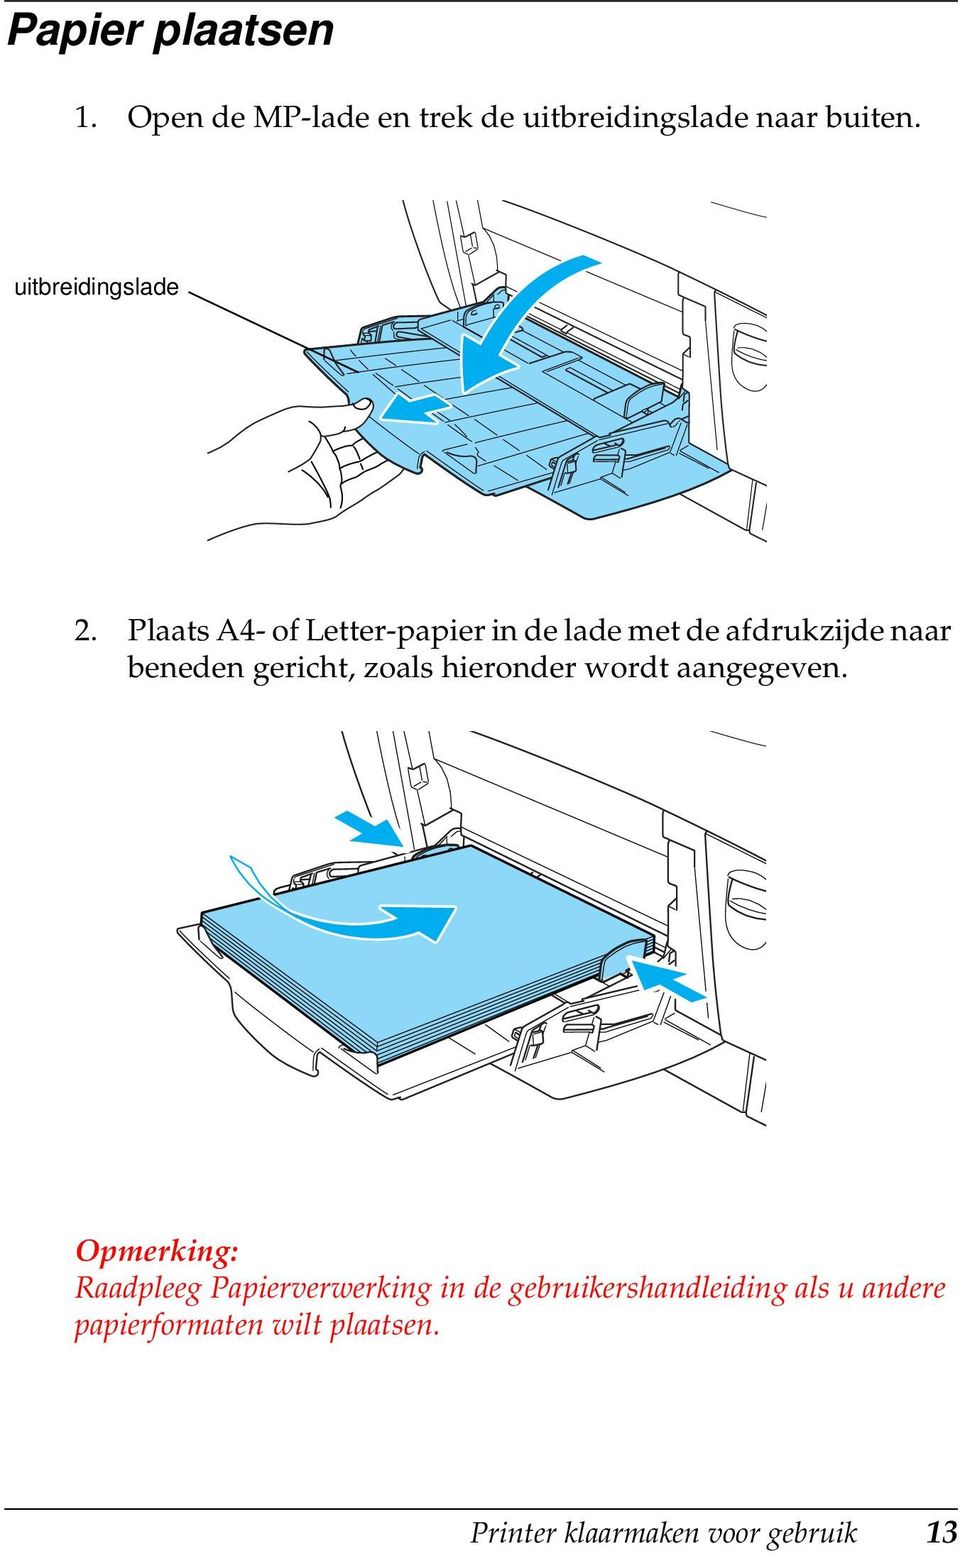 Plaats A4- of Letter-papier in de lade met de afdrukzijde naar beneden gericht, zoals